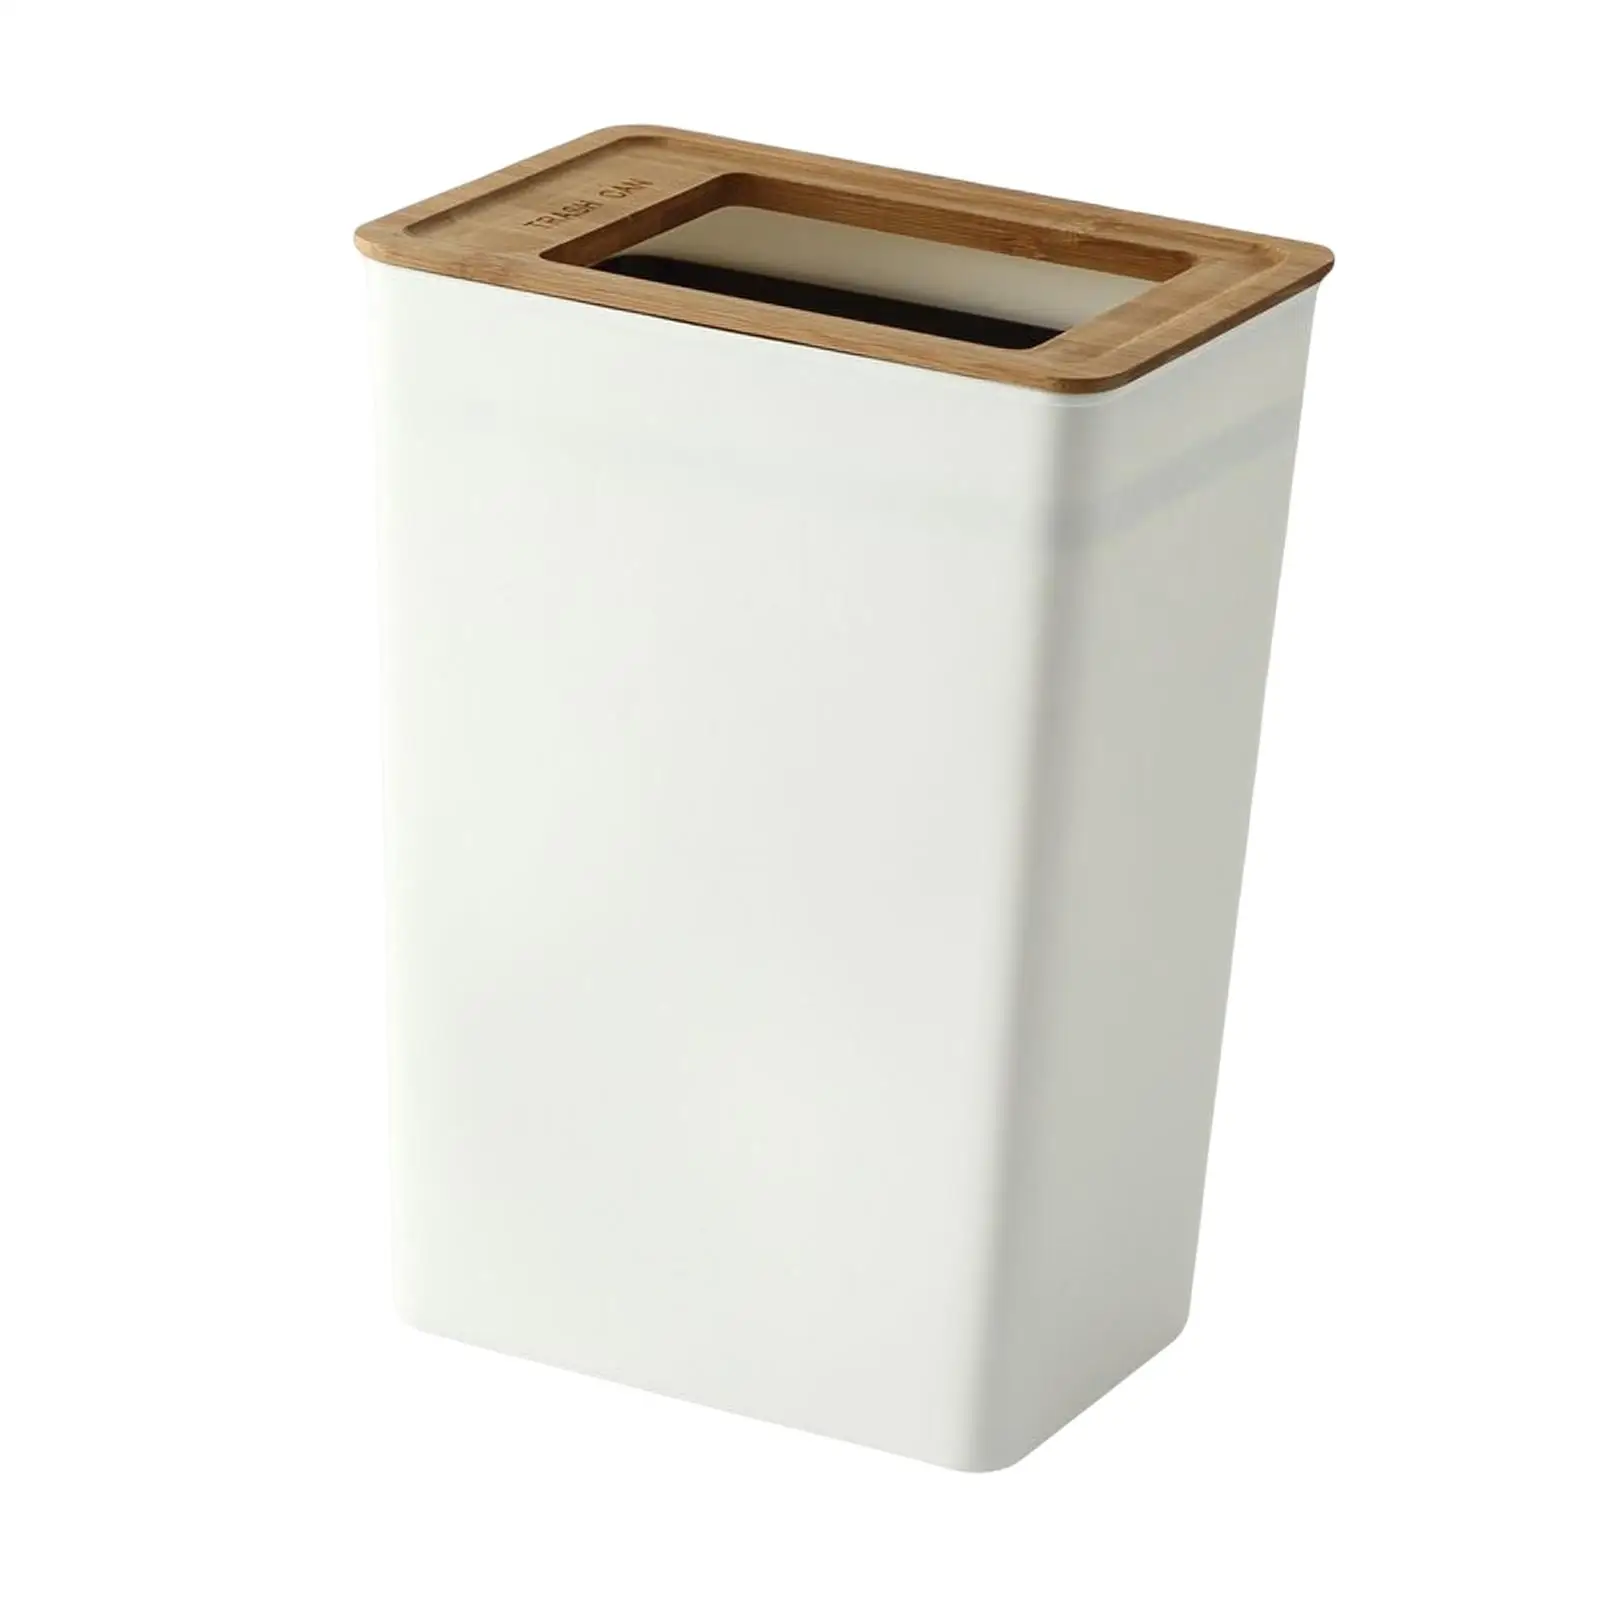 Rectangular Trash Can Garbage Container Bin for Indoor Outdoor Bedroom